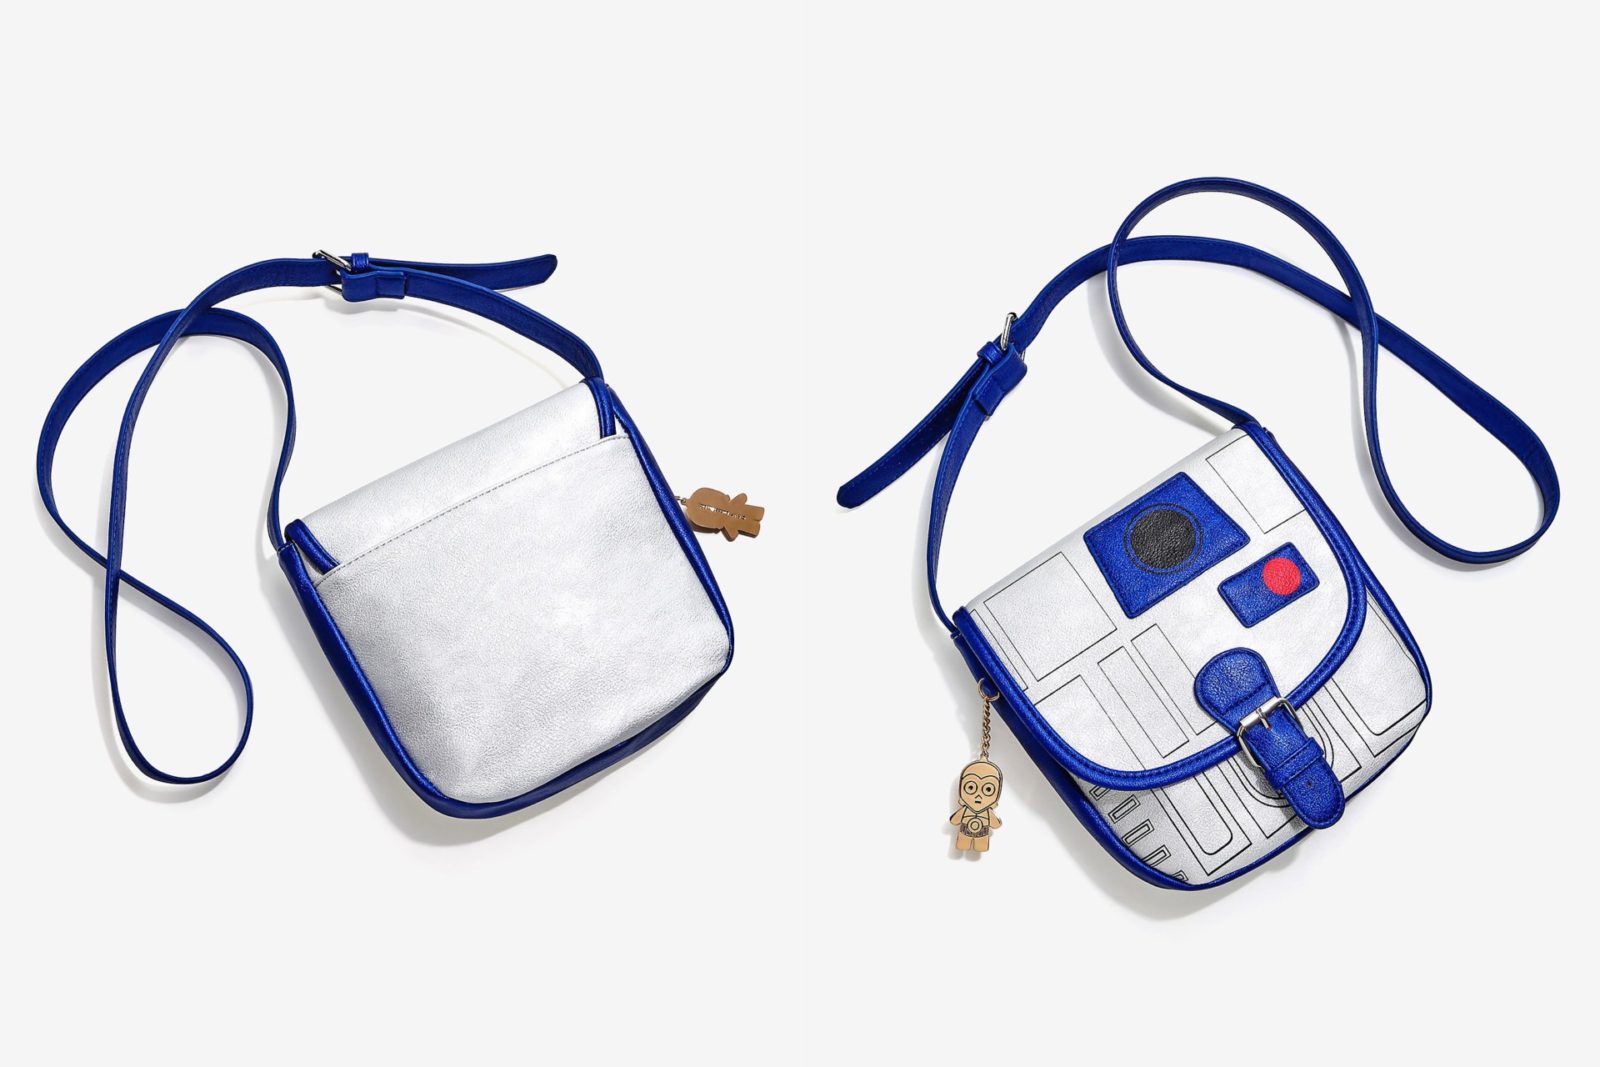 Loungefly R2-D2 metallic mini bag!